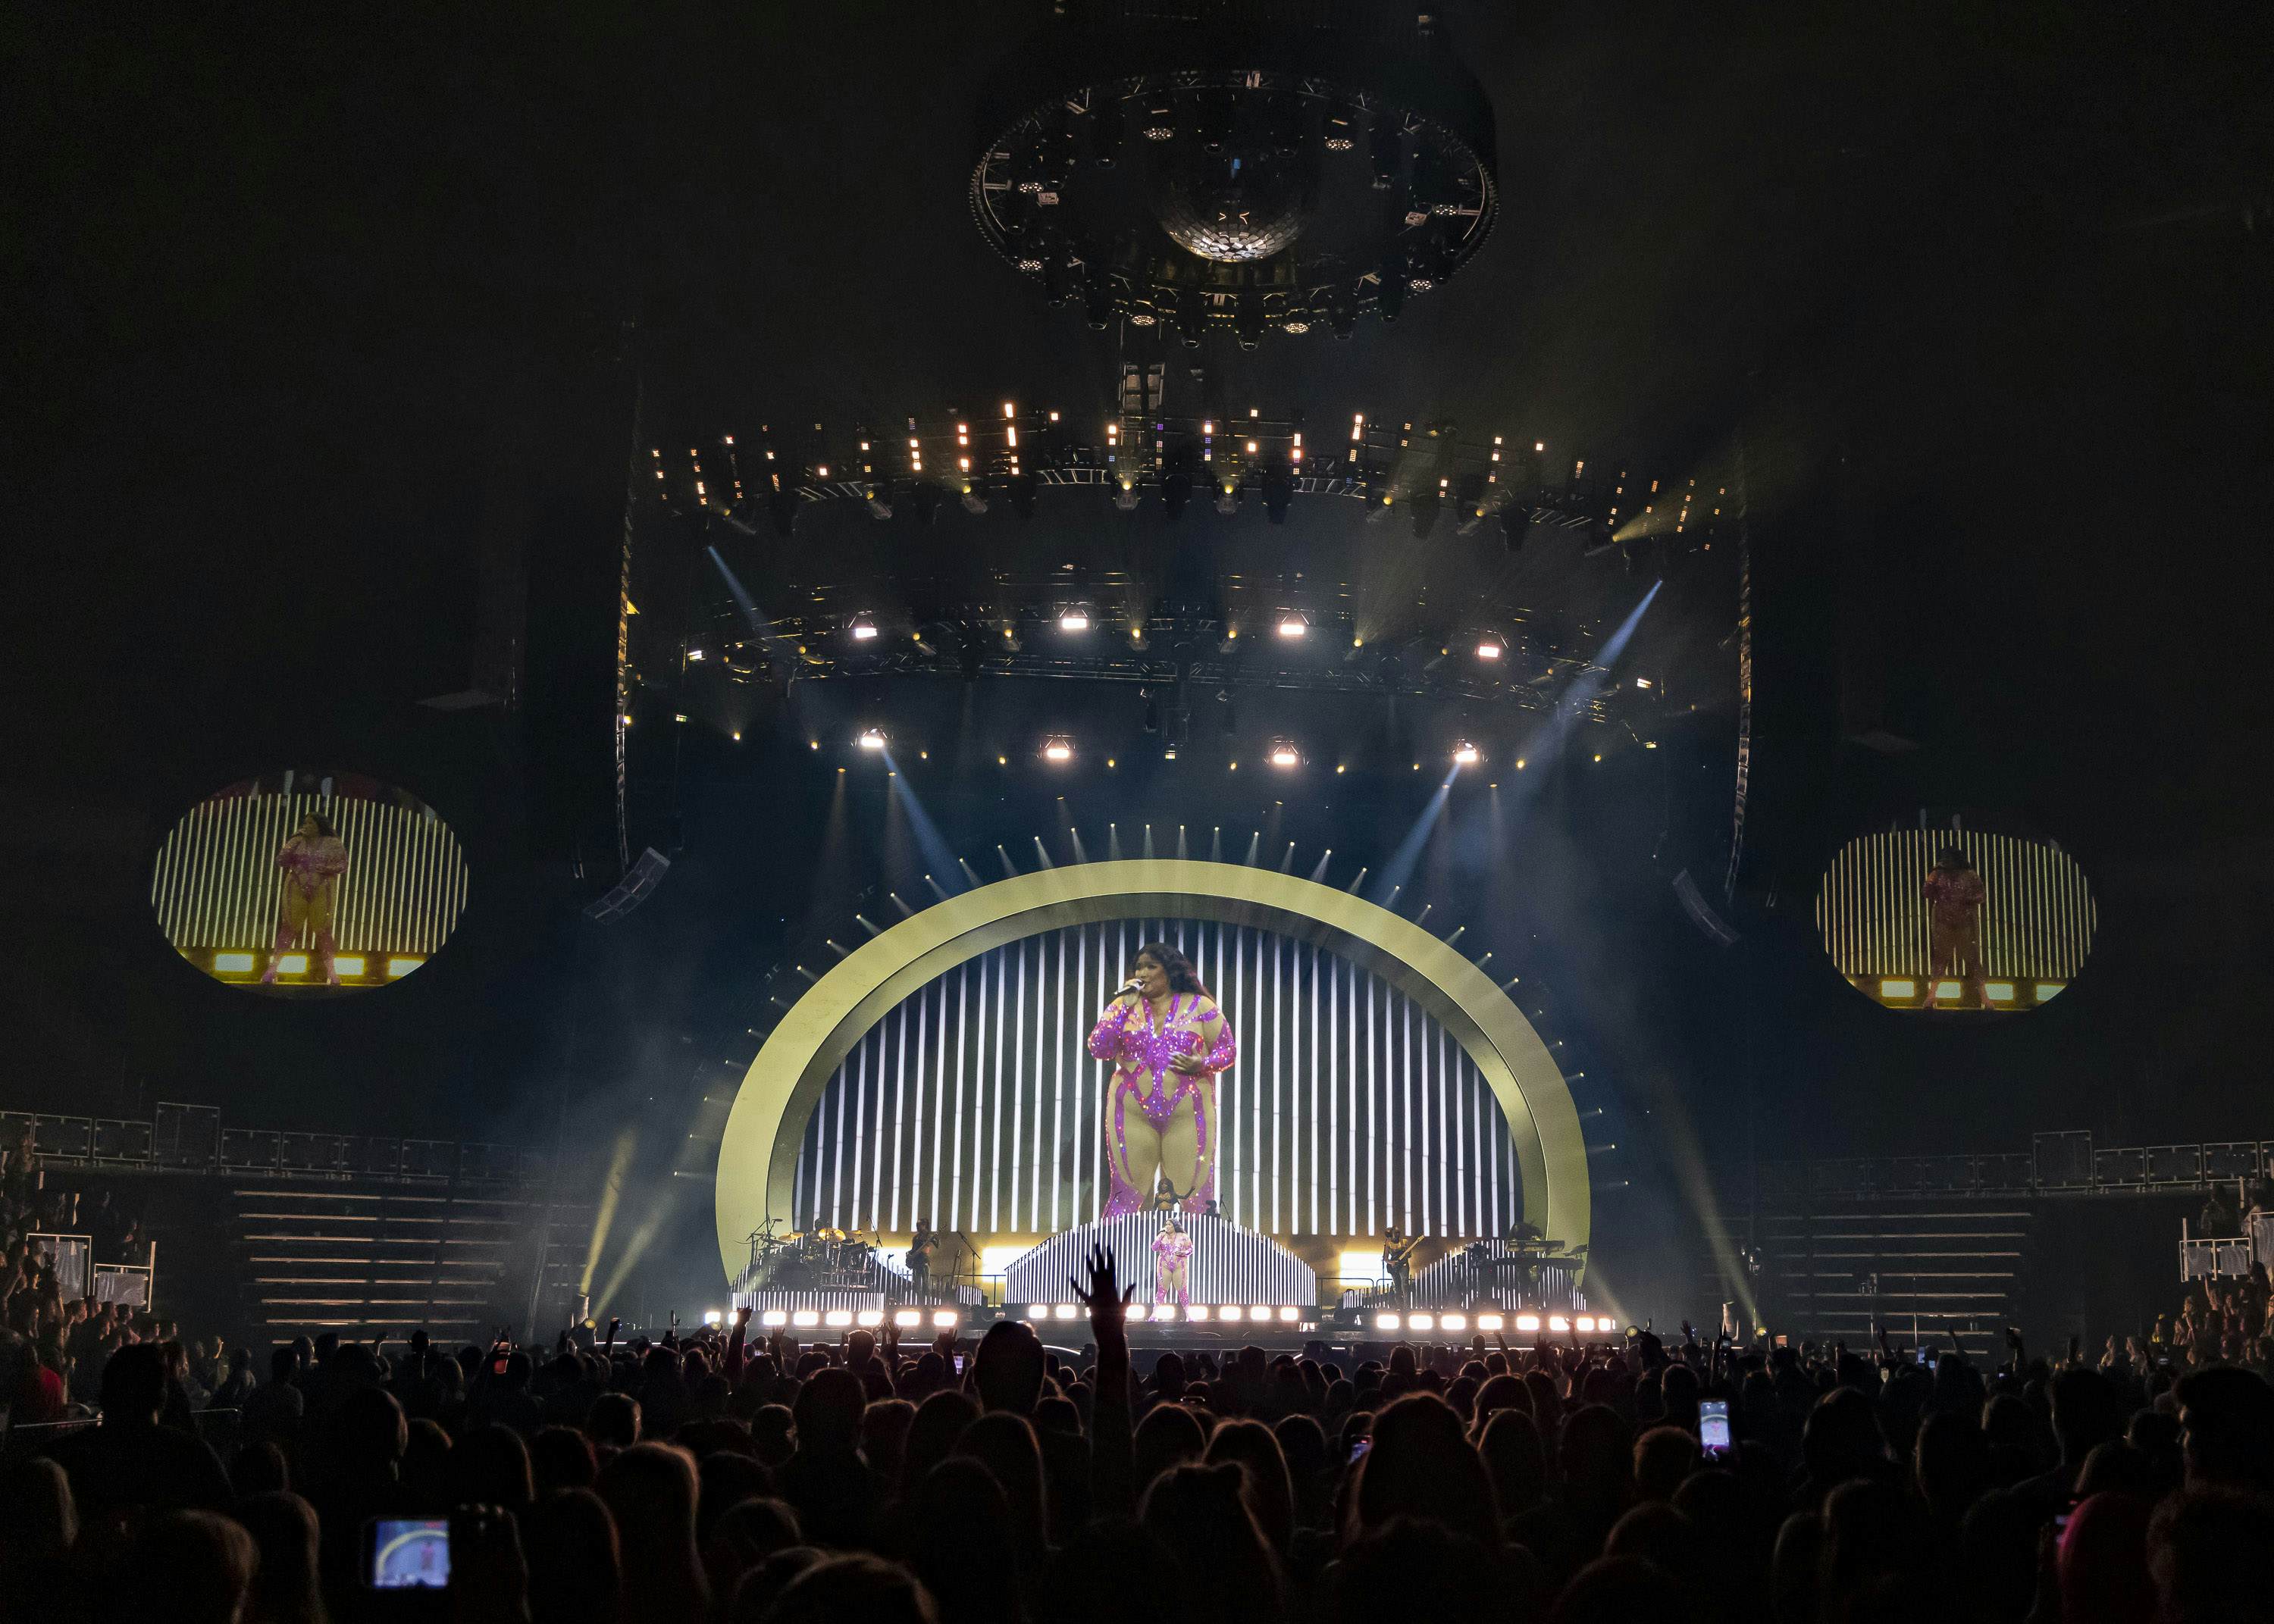 Caesars Palace Las Vegas Shows: Best Concerts & Entertainment